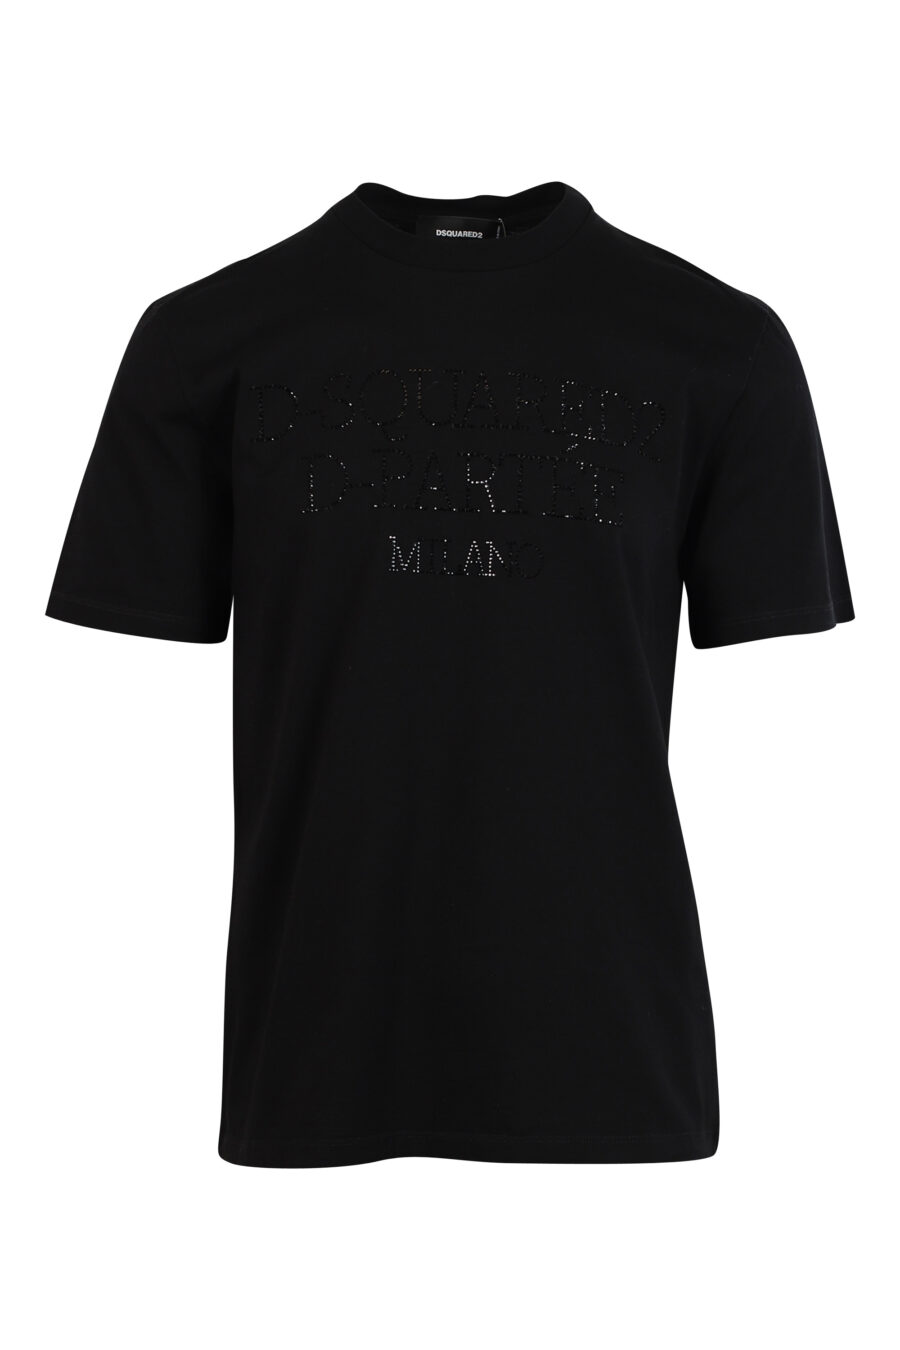 T-shirt preta com maxilogo em relevo preto - 8052134990285